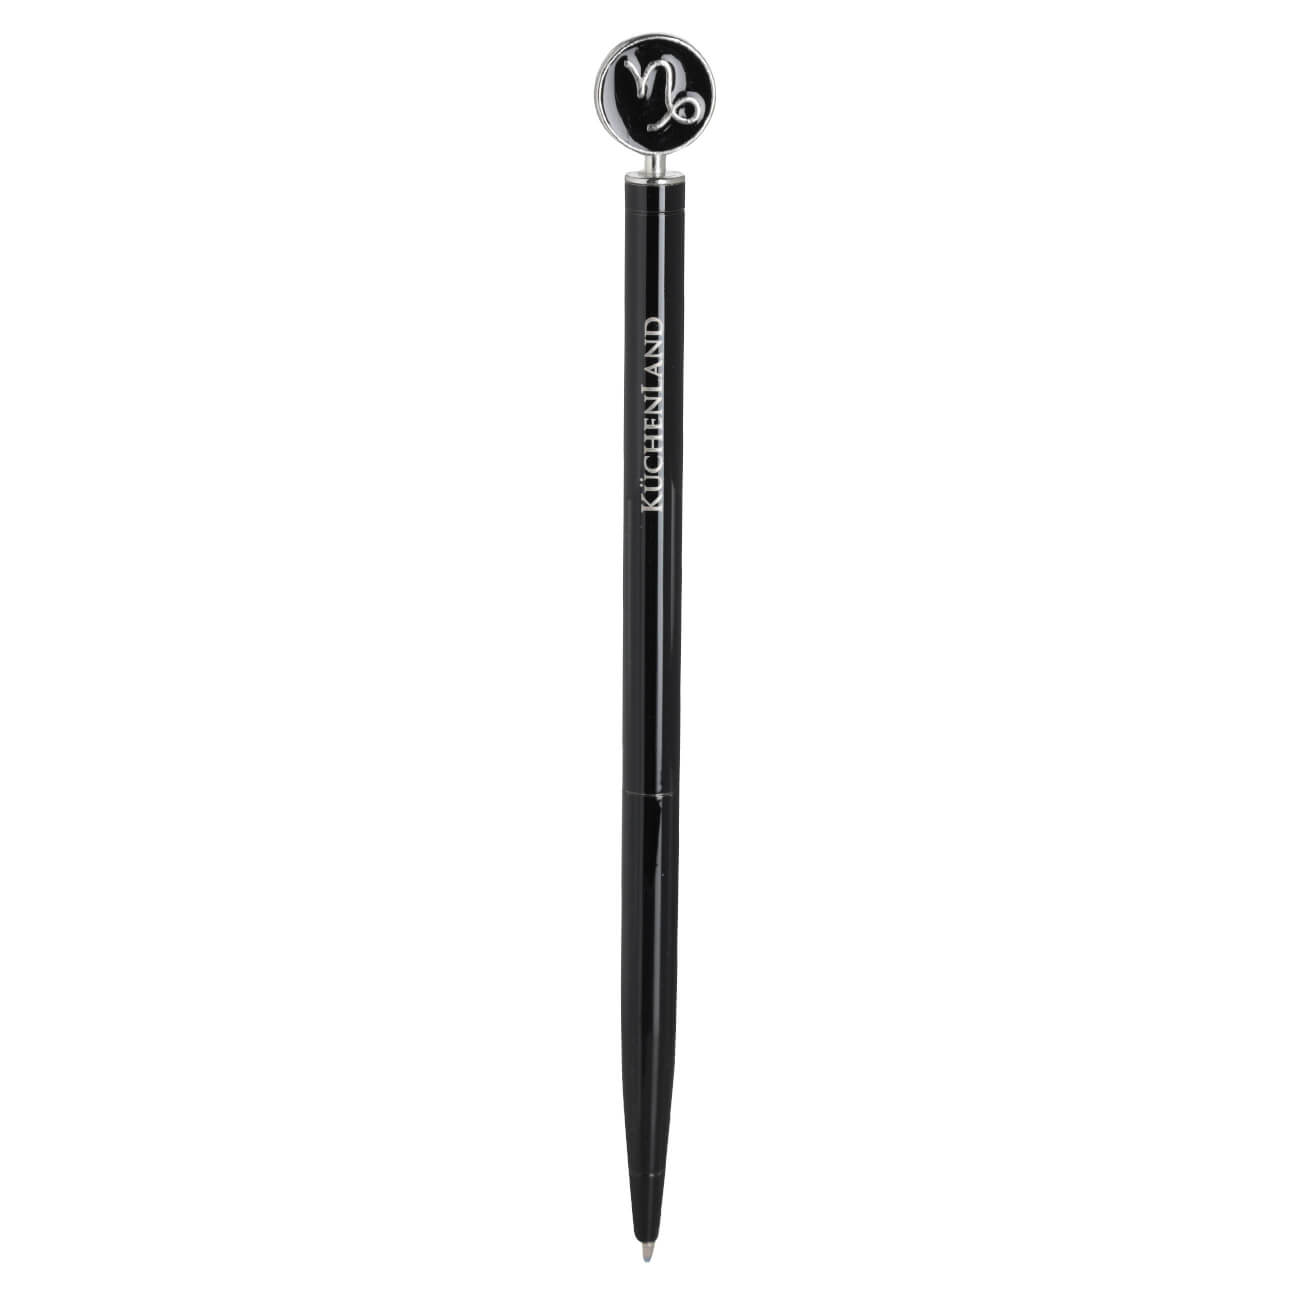 Ручка шариковая, 15 см, с фигуркой, сталь, черно-серебристая, Козерог, Zodiac перьевая ручка manzoni